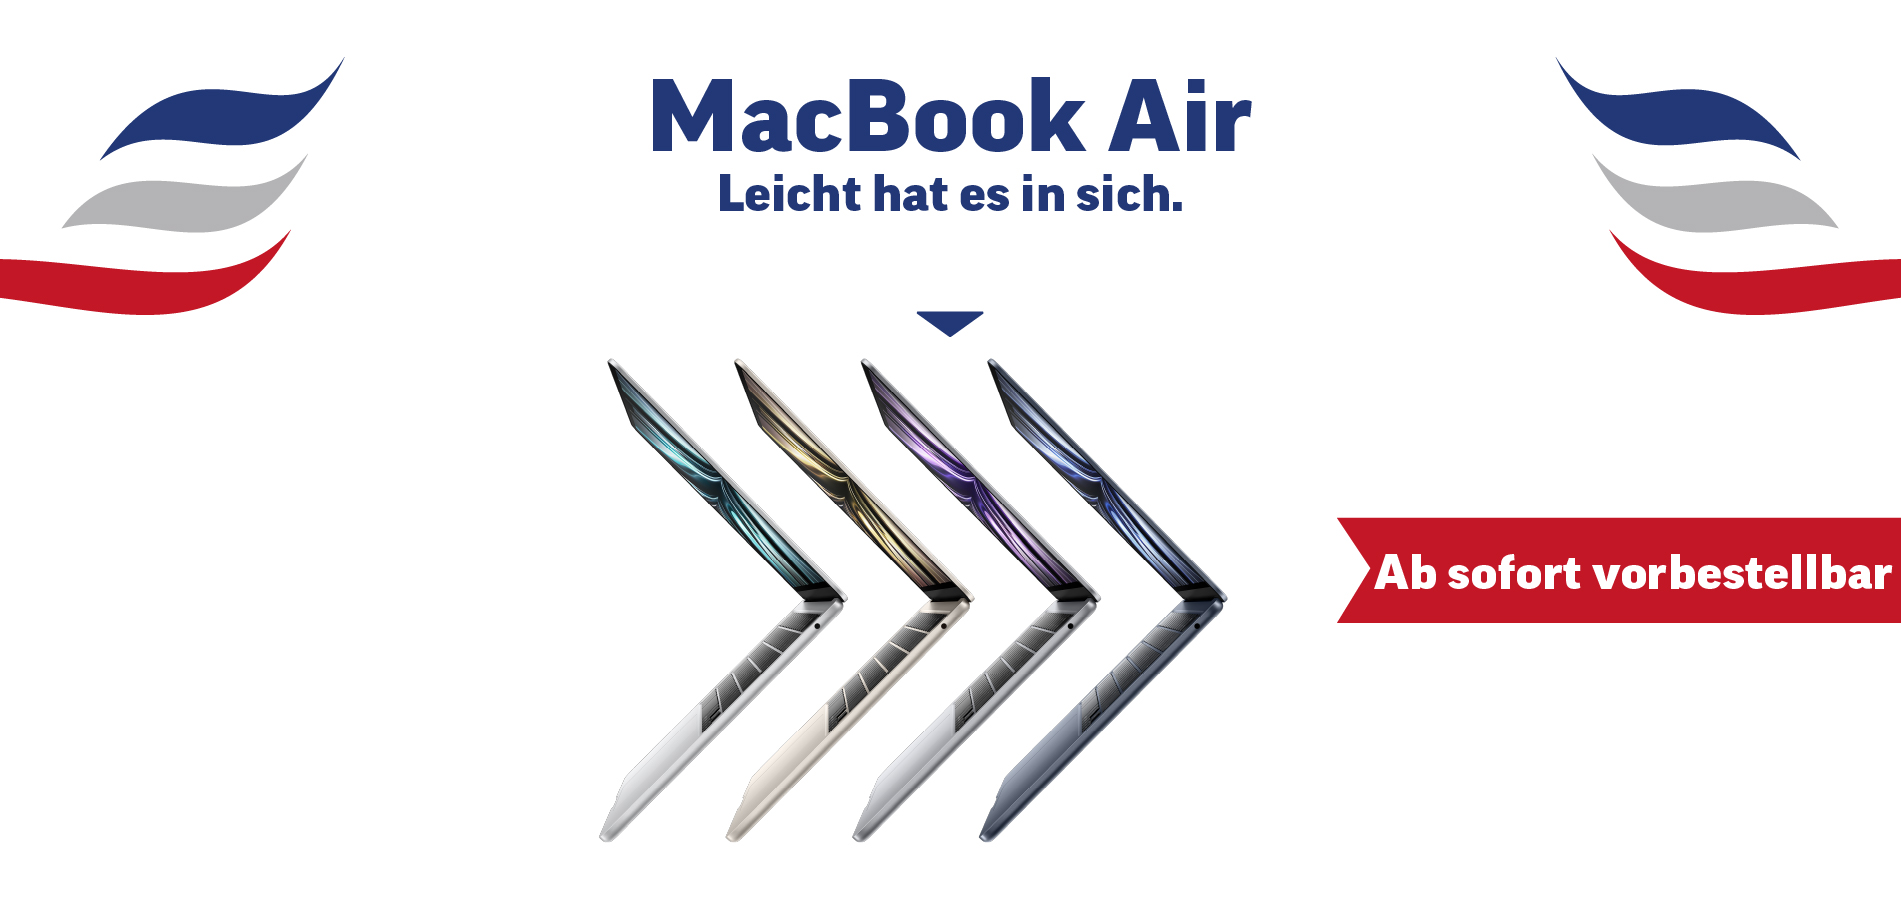 MacBook Air 2022